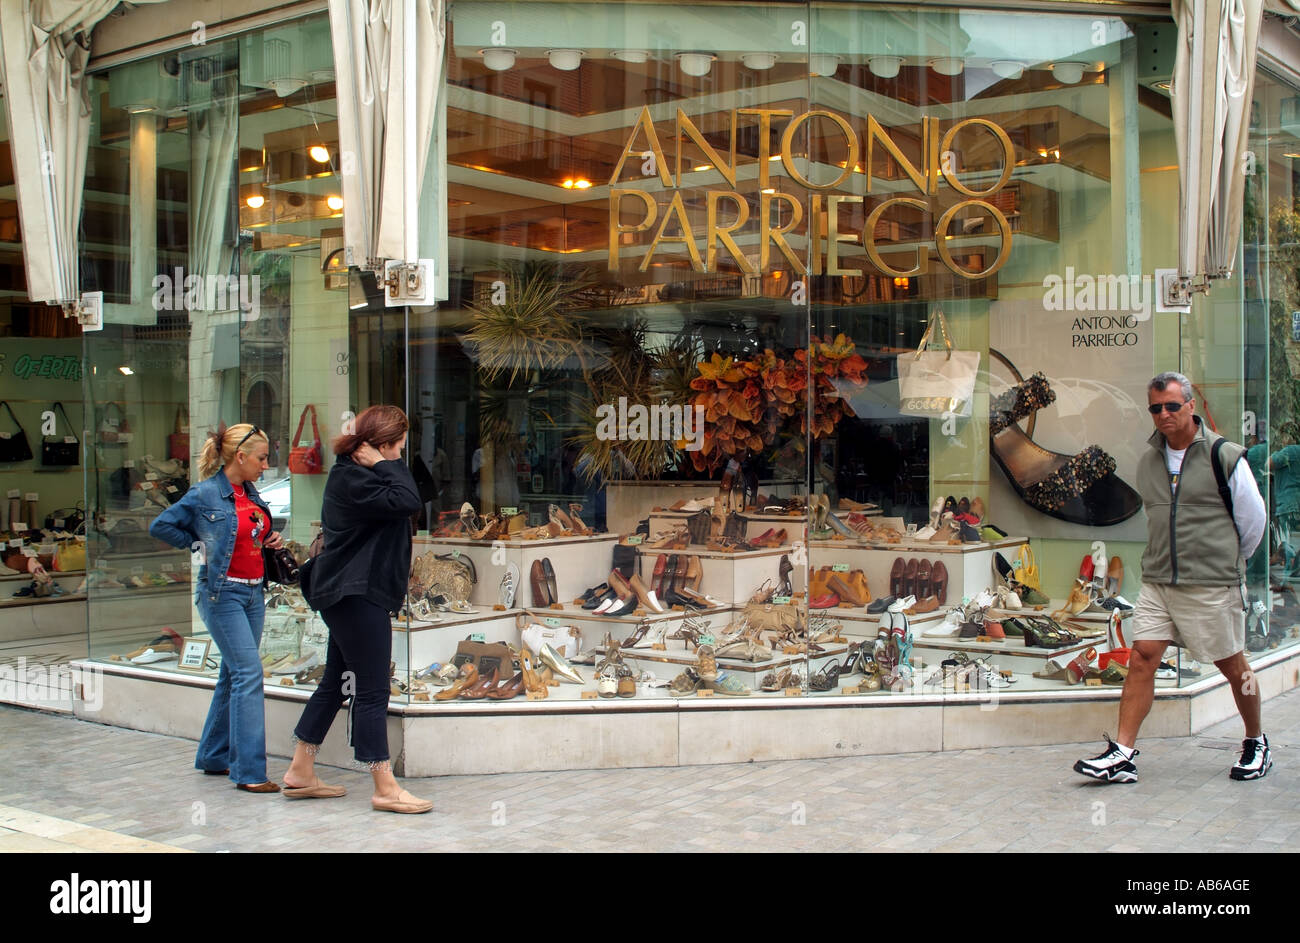 Antonio Parriego fashion shoe store in Malaga southern Spain Europe EU  Stock Photo - Alamy